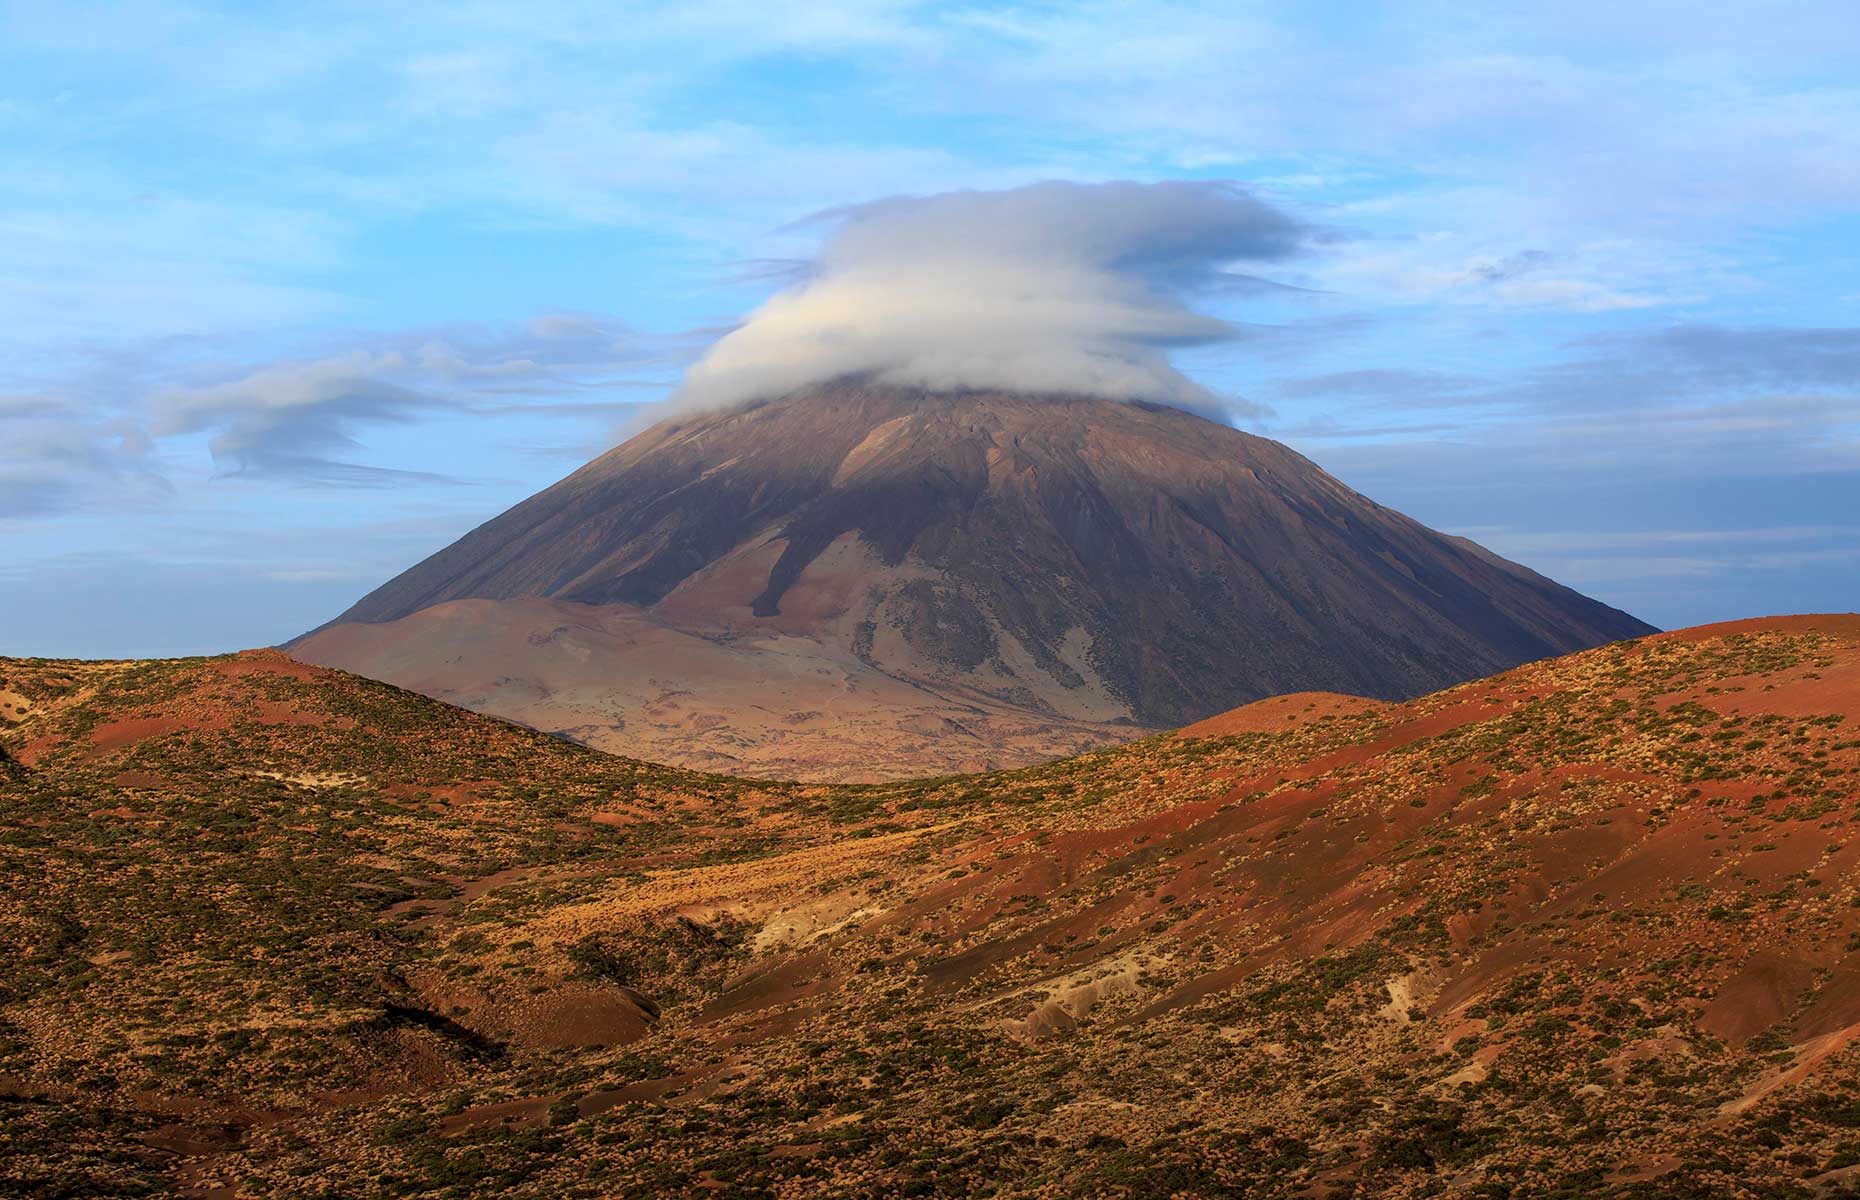 Mount Teide (Image: imageBROKER.com/Shutterstock)